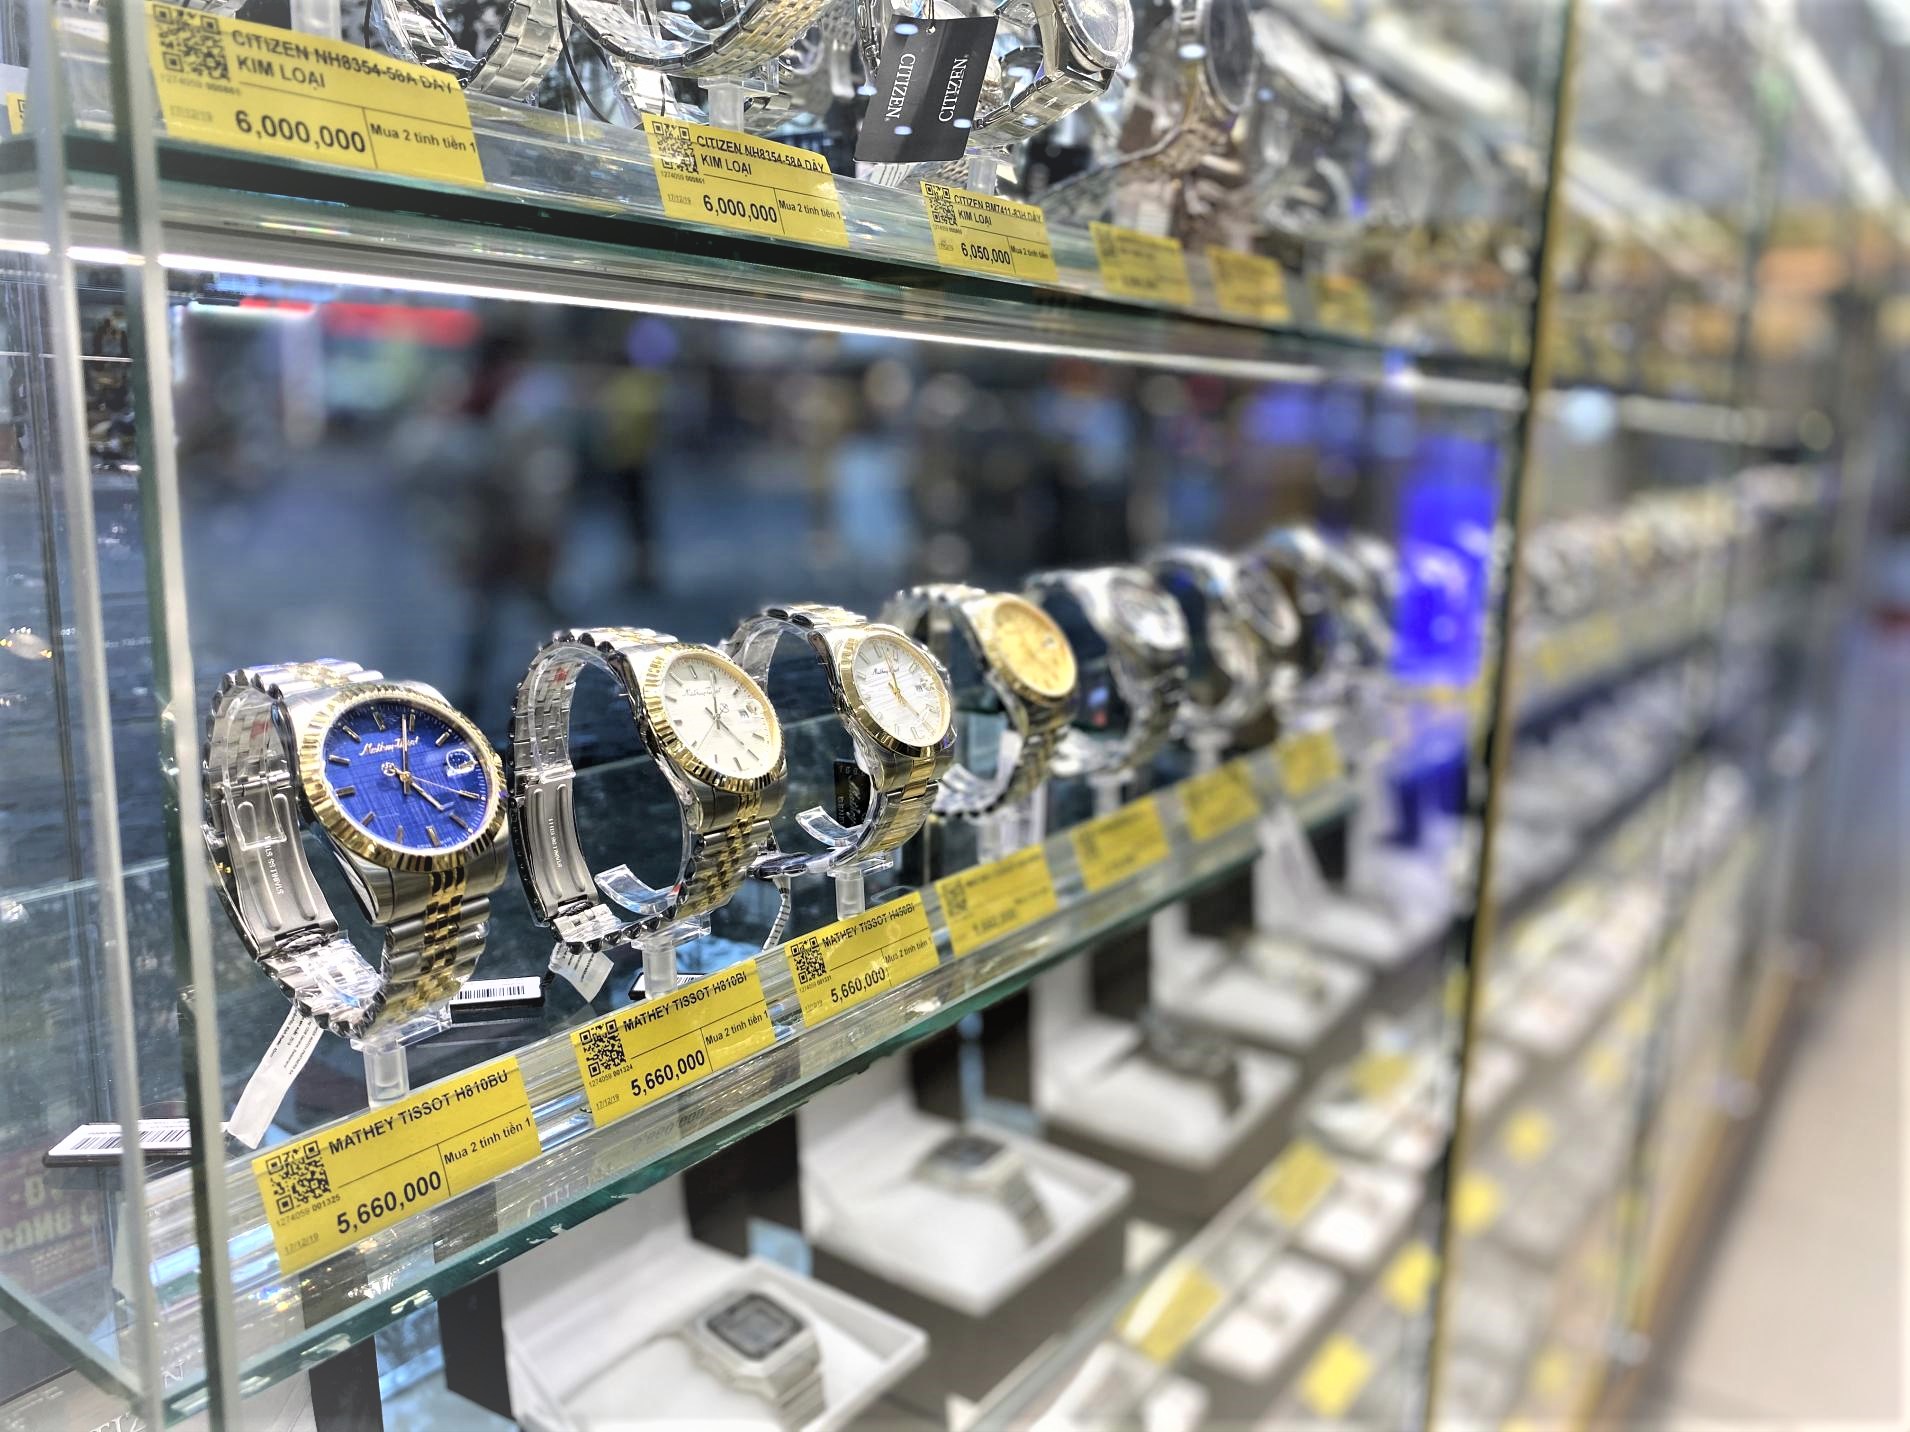 đế trưng bày đồng hồ là vật dụng không thể thiếu ở các showroom